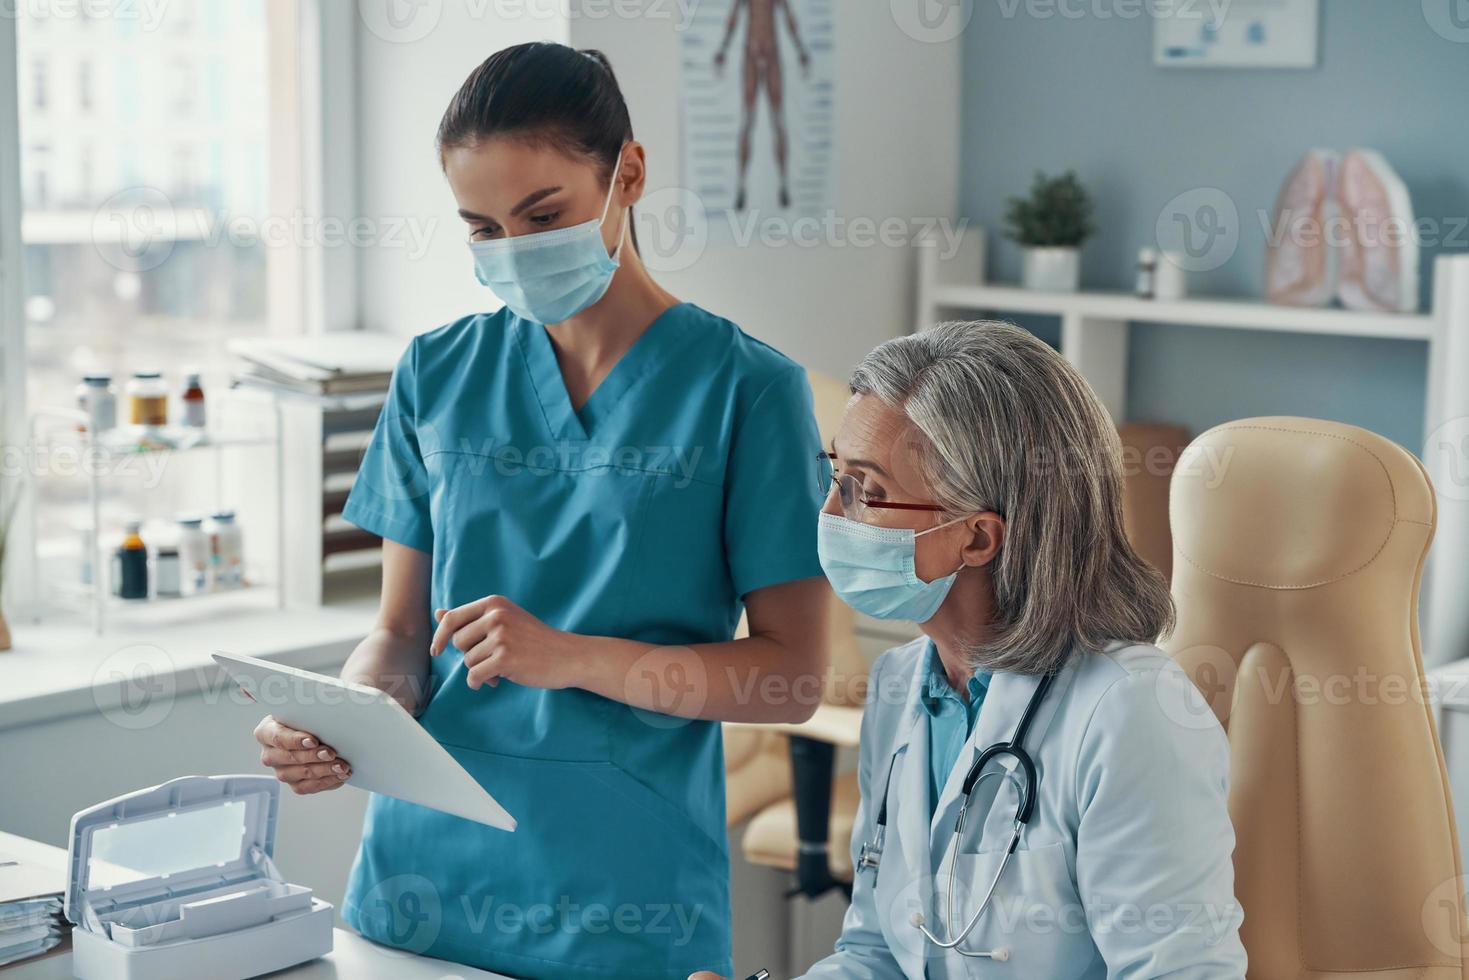 dos compañeras de trabajo con uniforme médico y máscaras protectoras hablando y usando una tableta digital mientras trabajan en el hospital foto